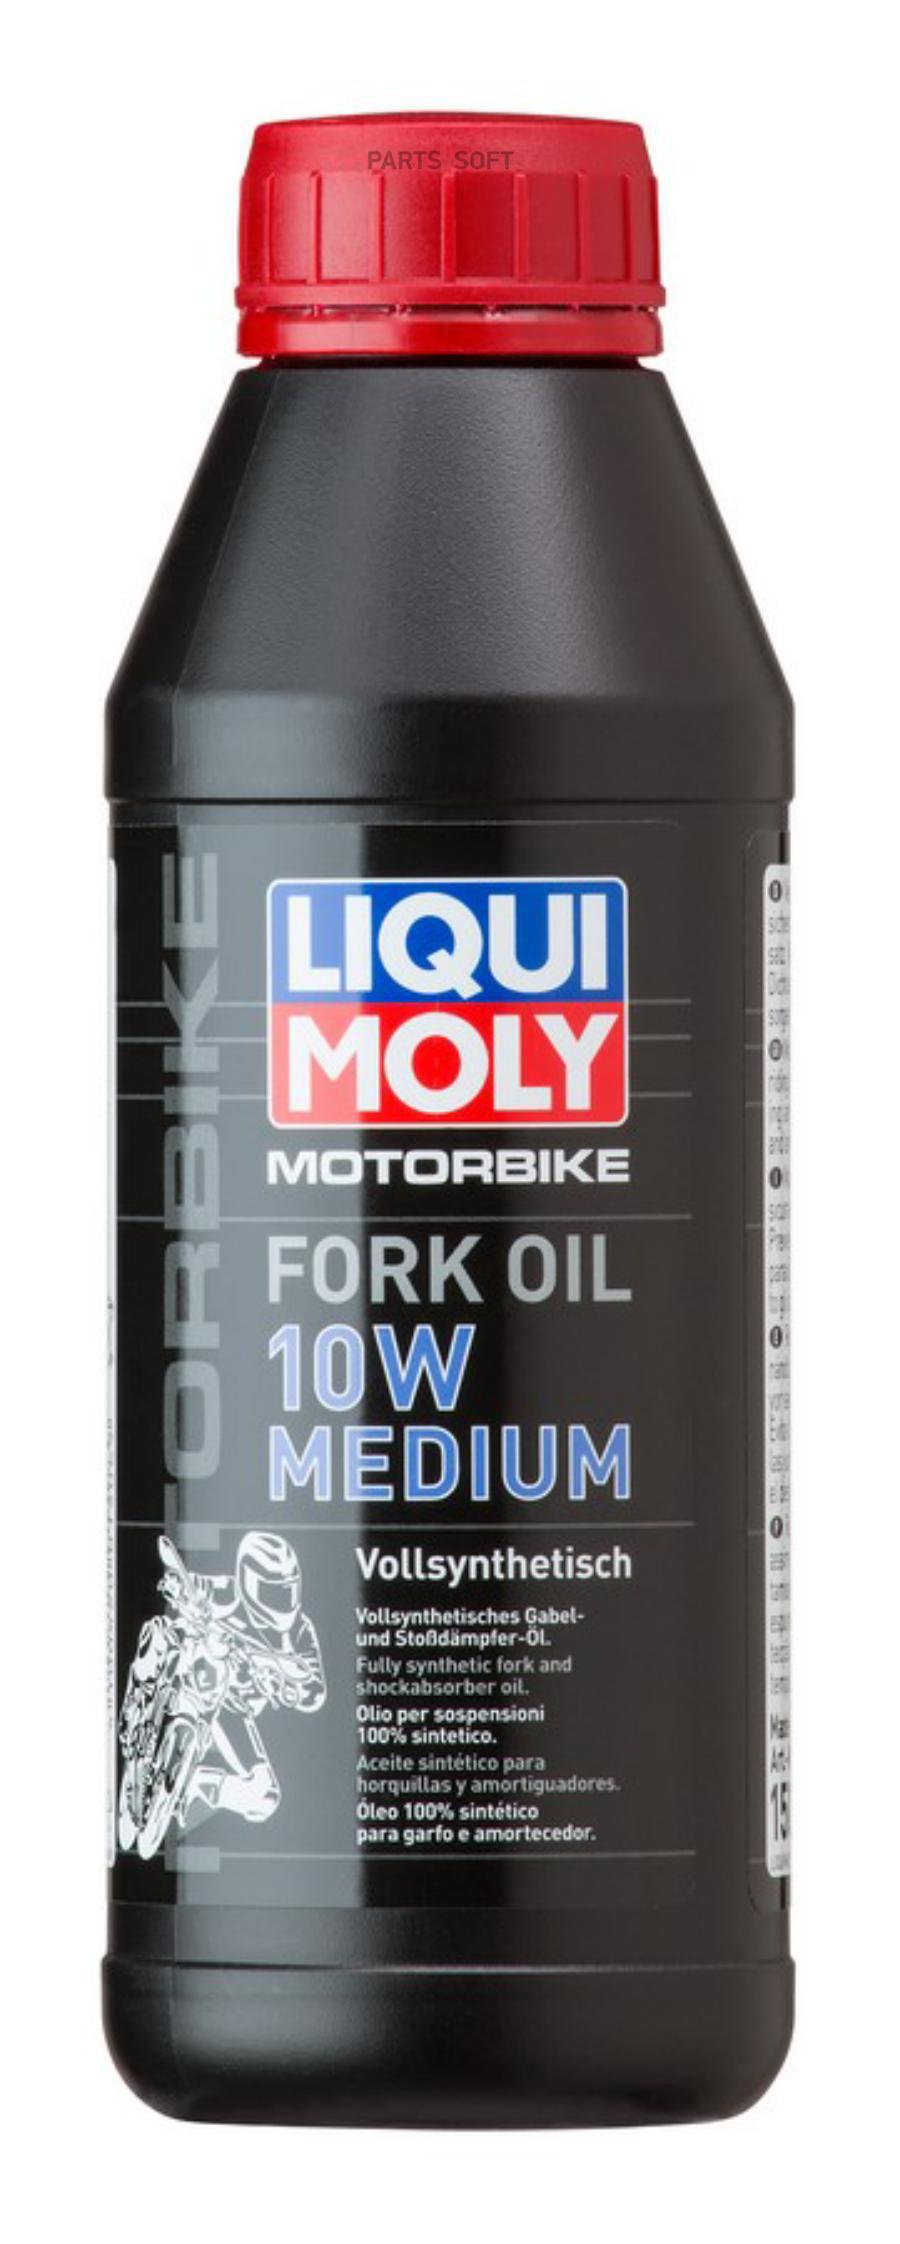 LIQUI MOLY Синтетическое масло для вилок и амортизаторов 10W 05л Motorbike Fork Oil Medium